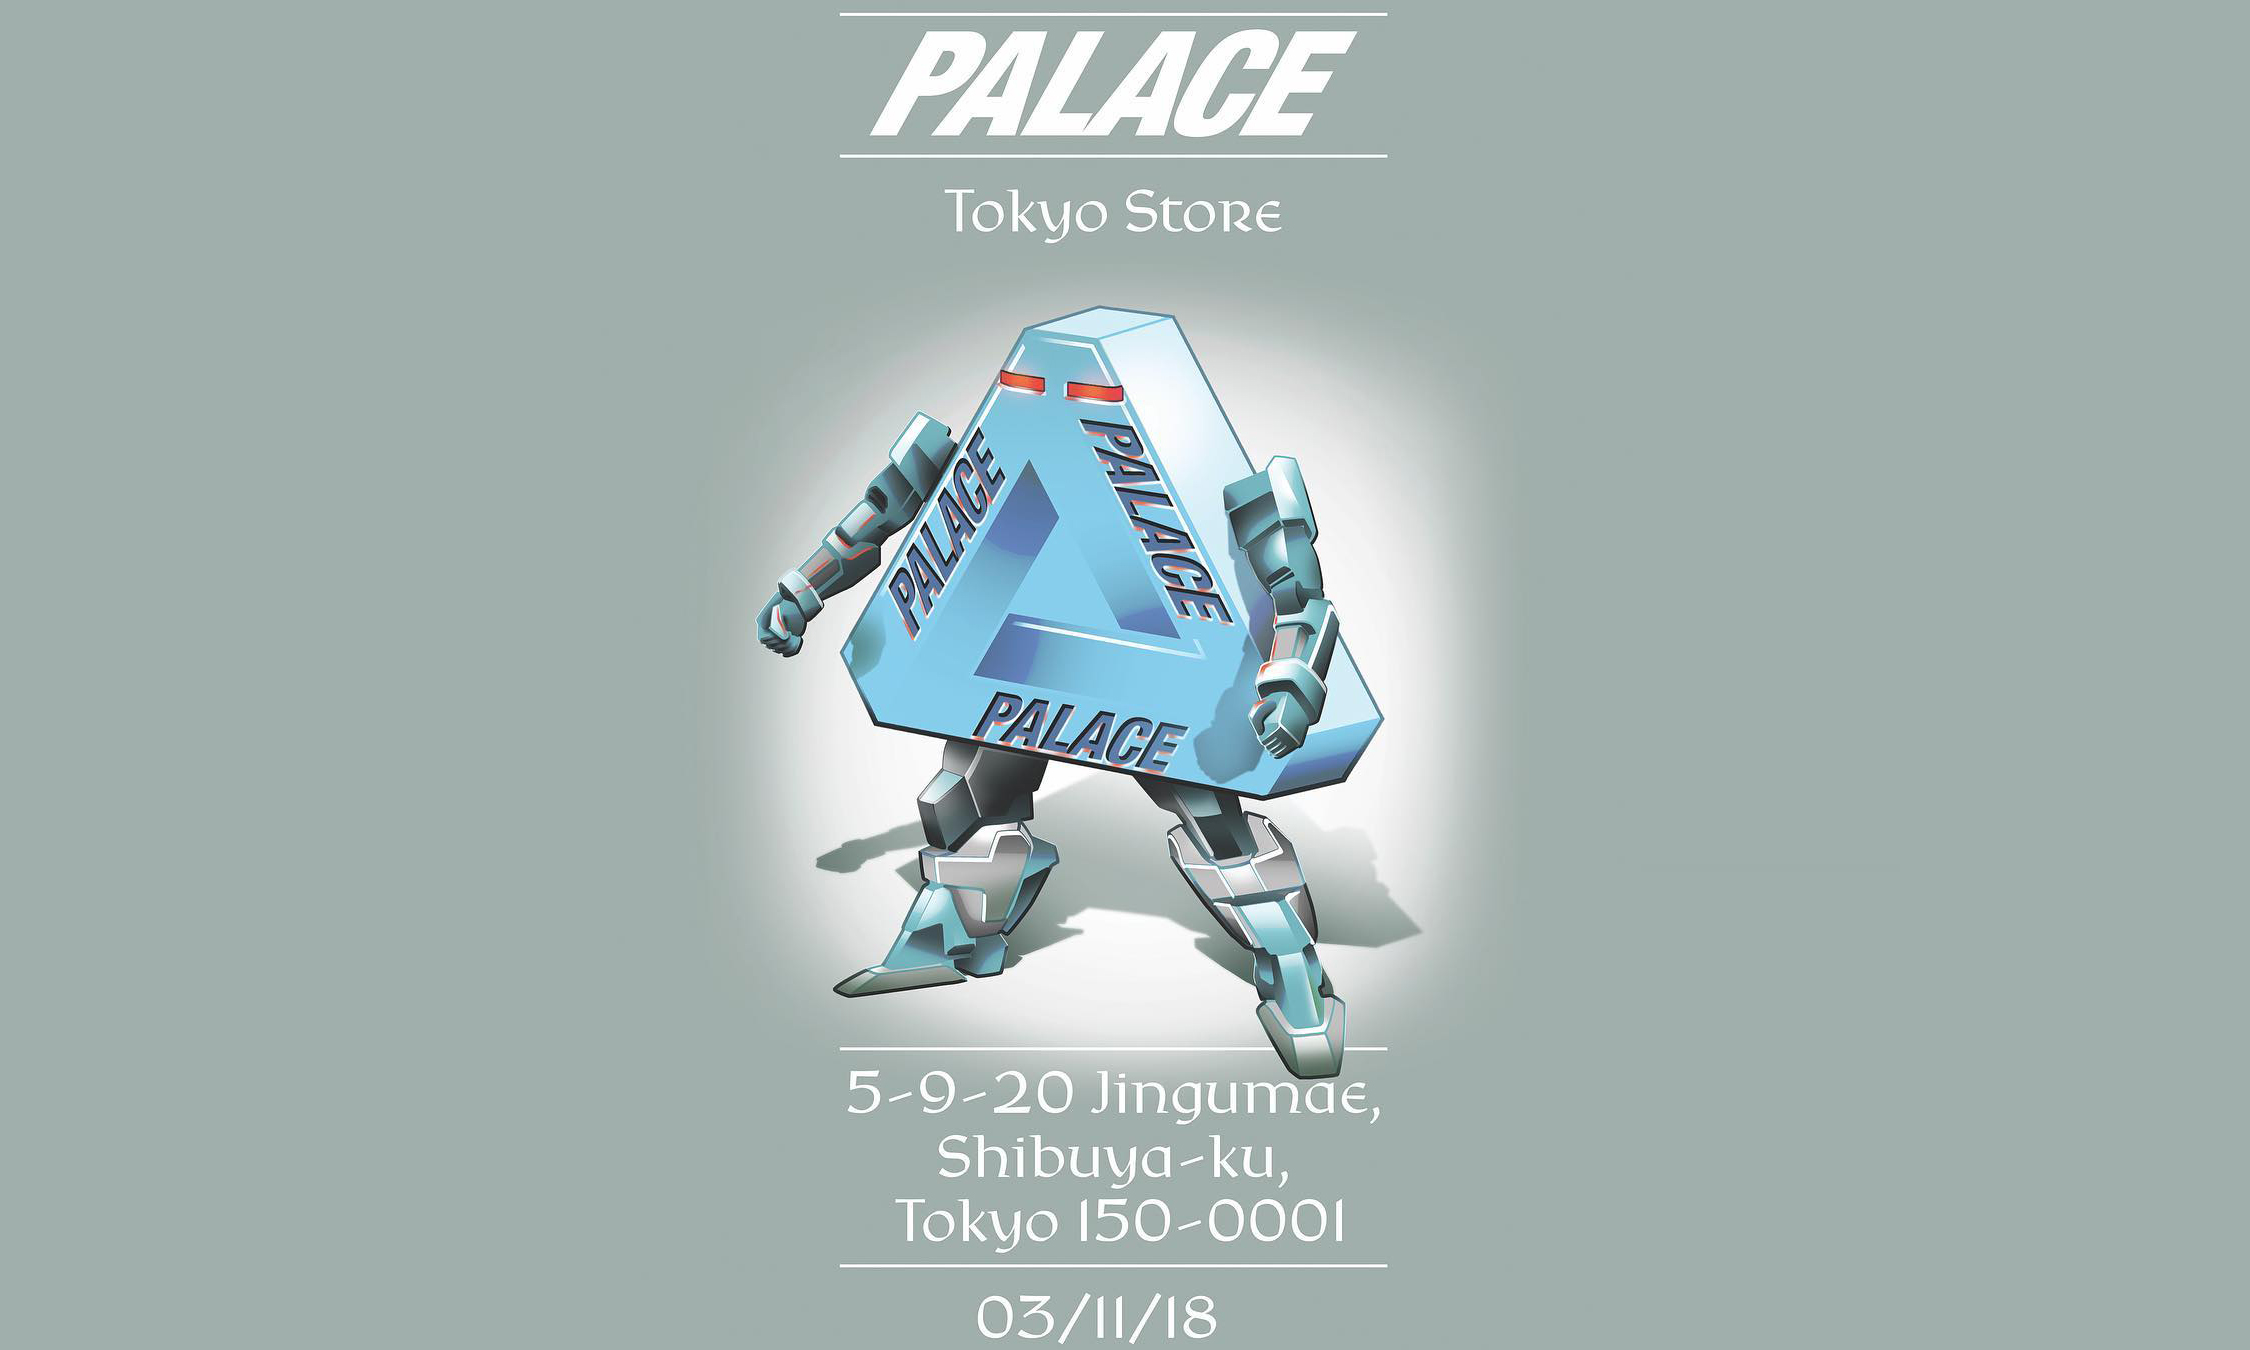 PALACE 即将于东京开设全新门店